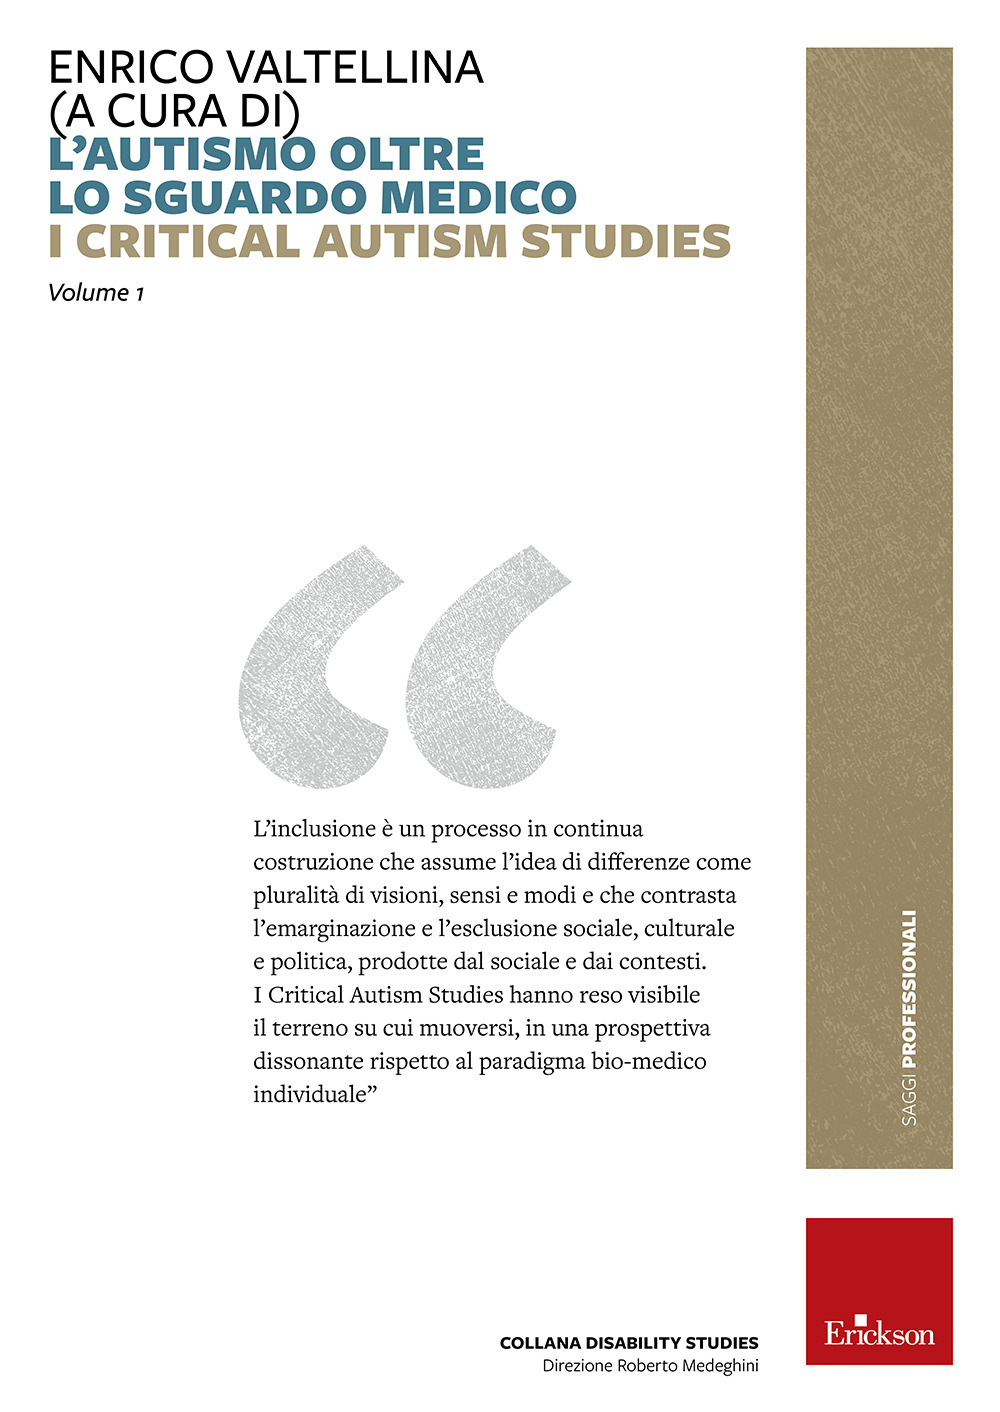 L'autismo oltre lo sguardo medico. Critical Autism Studies